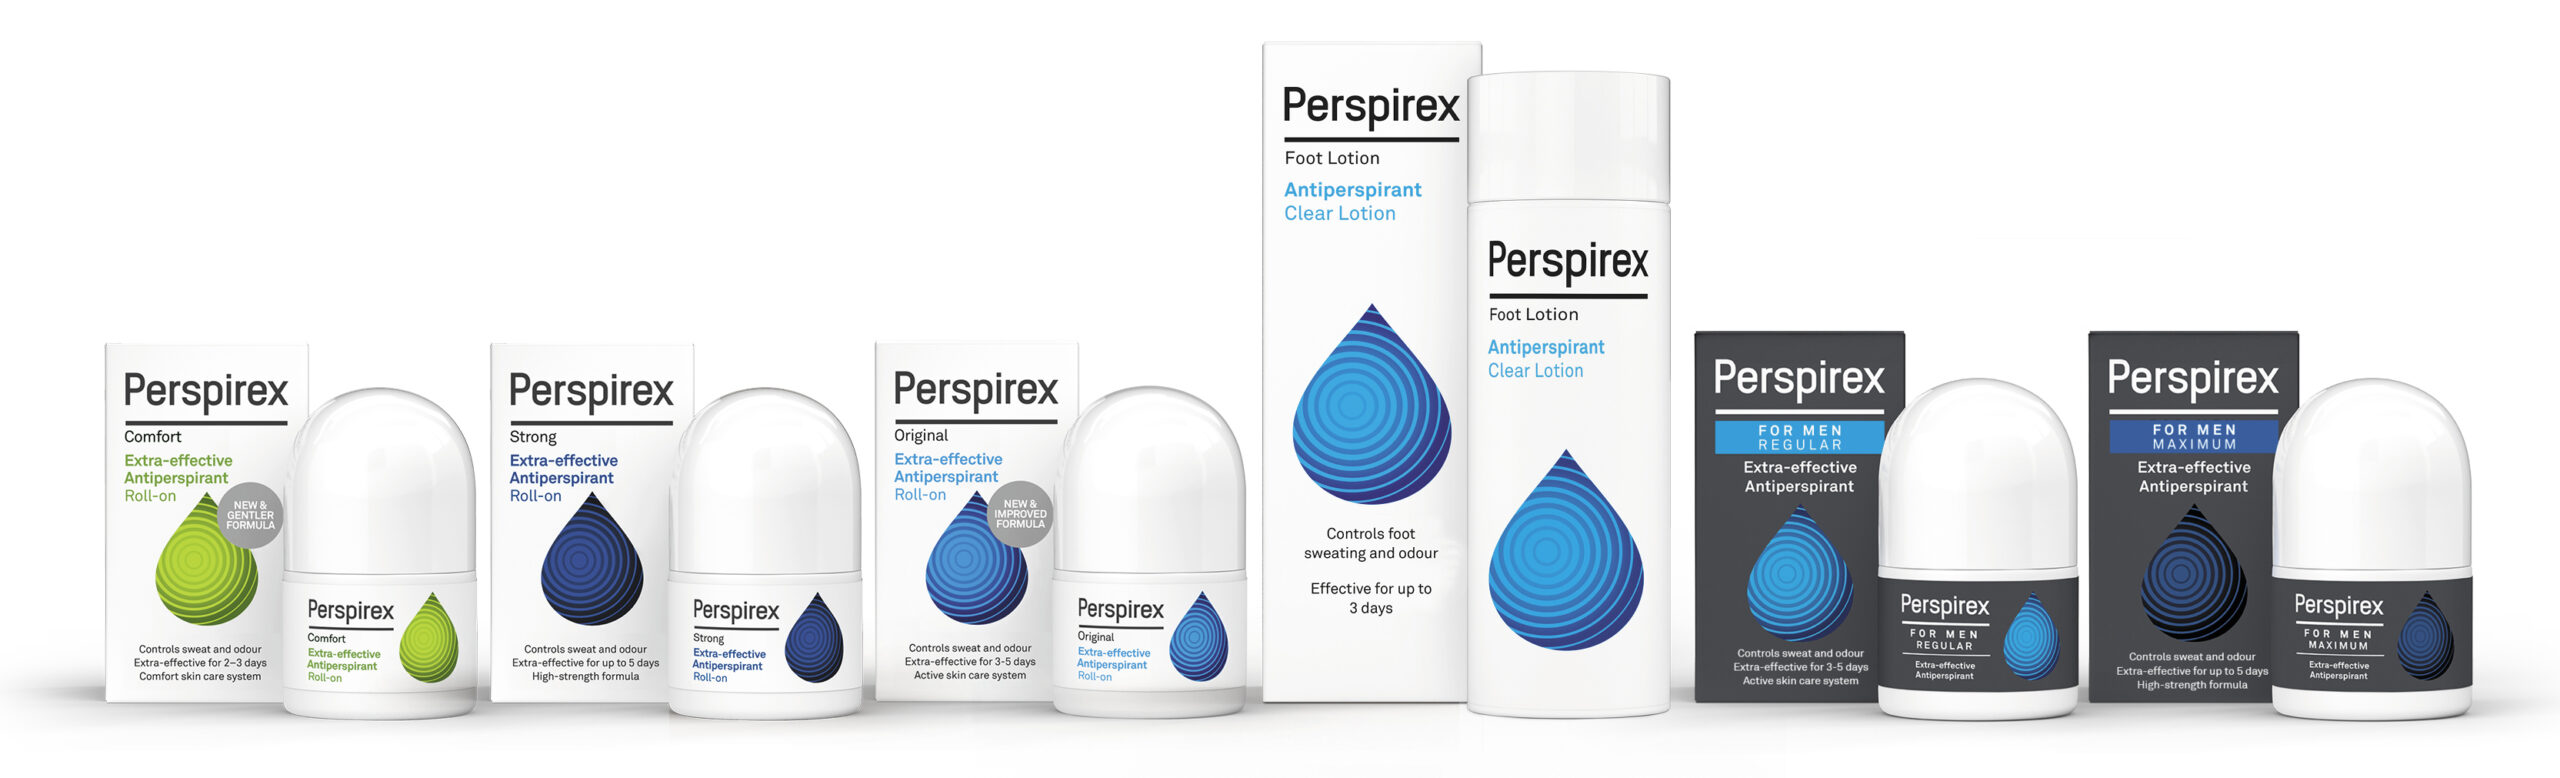 prodotti a marchio Perspirex